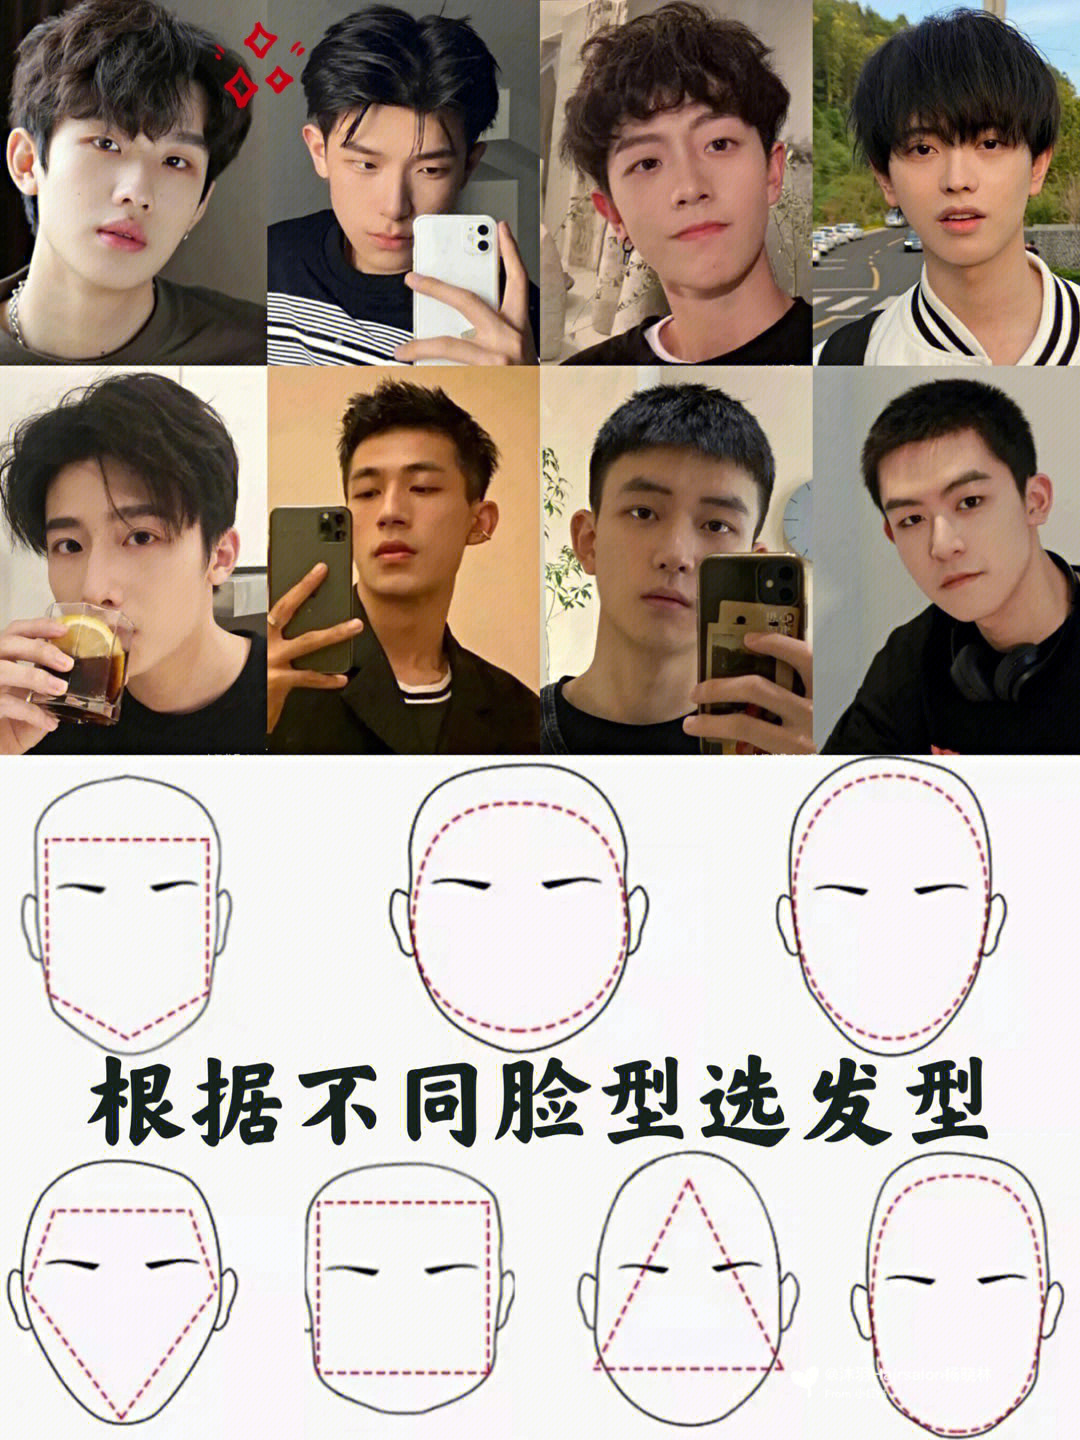 根据不同脸型选发型/男士发型推荐/判断脸型/男士发型参考碎盖发型,短